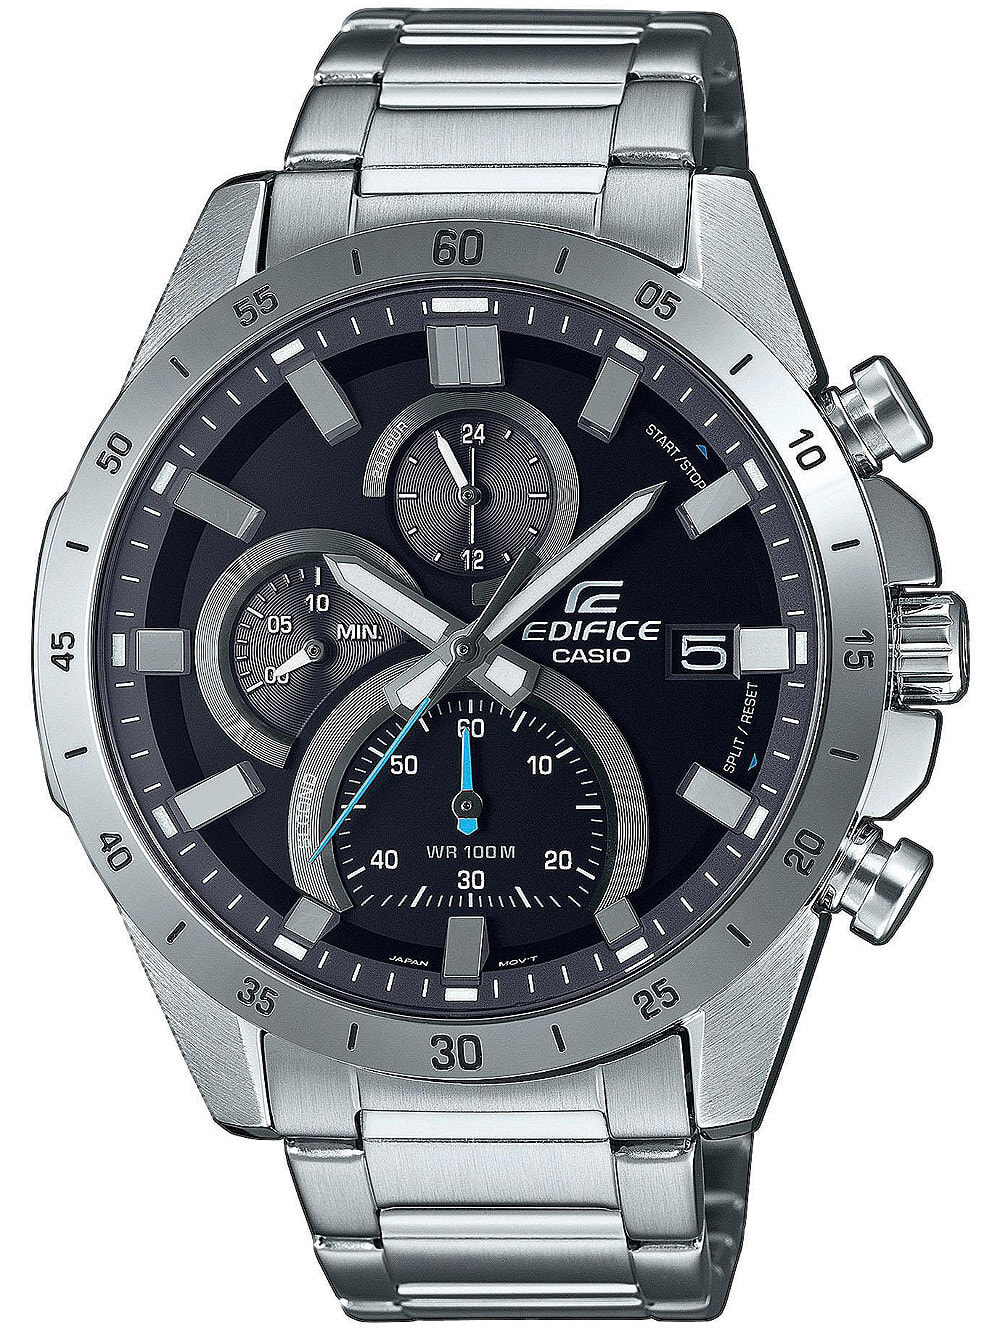 Мужские наручные часы с серебряным браслетом Casio EFR-571D-1AVUEF Edifice mens 47mm 10ATM